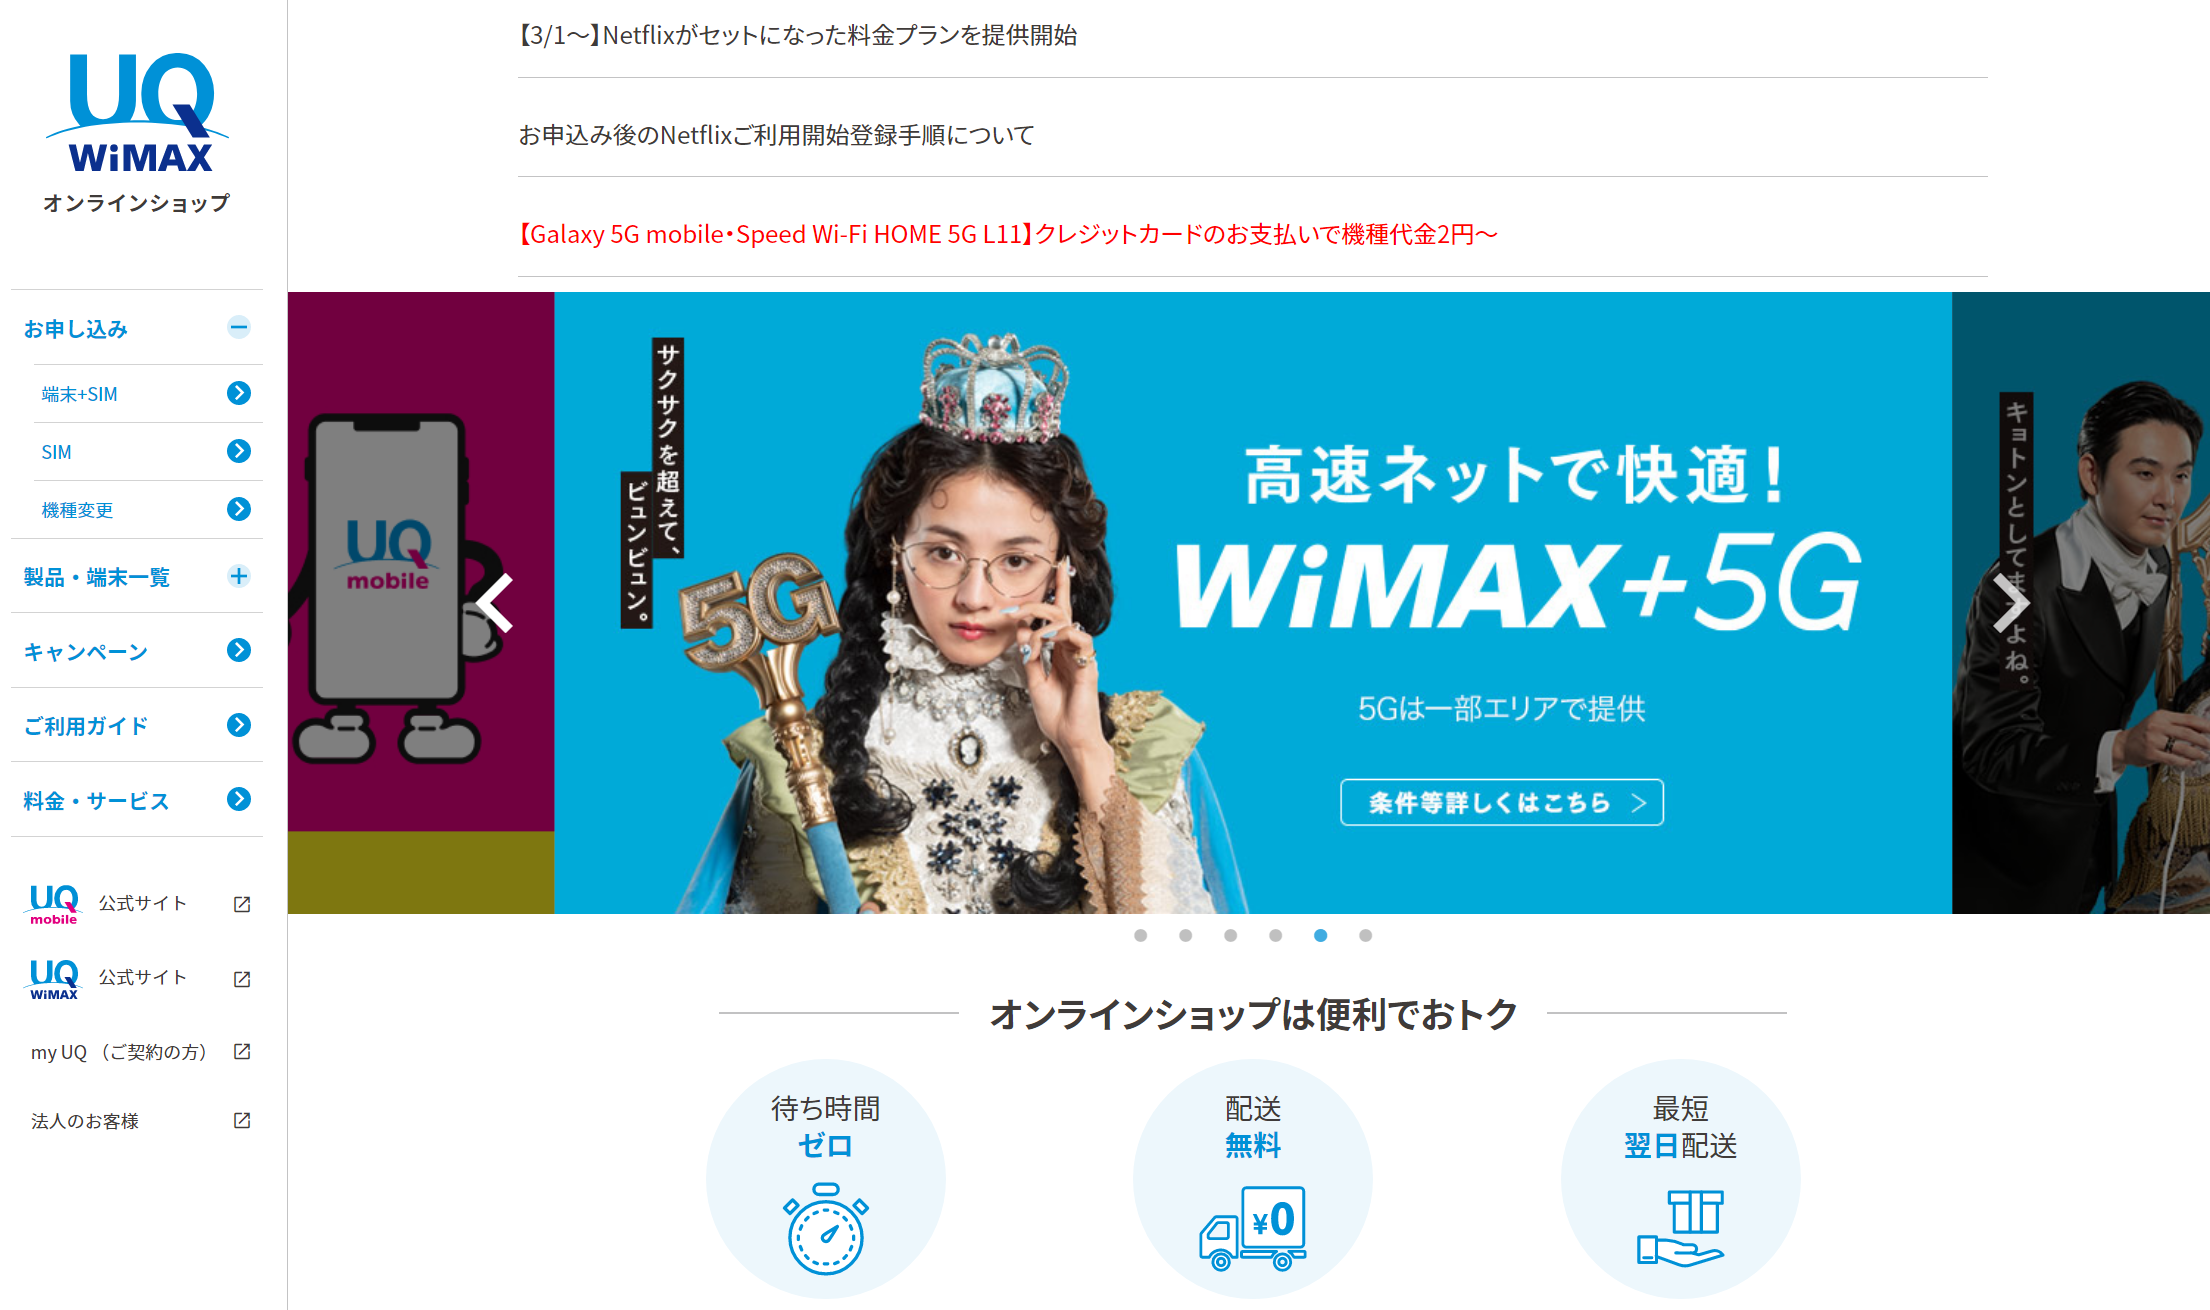 uq wimaxトップページ